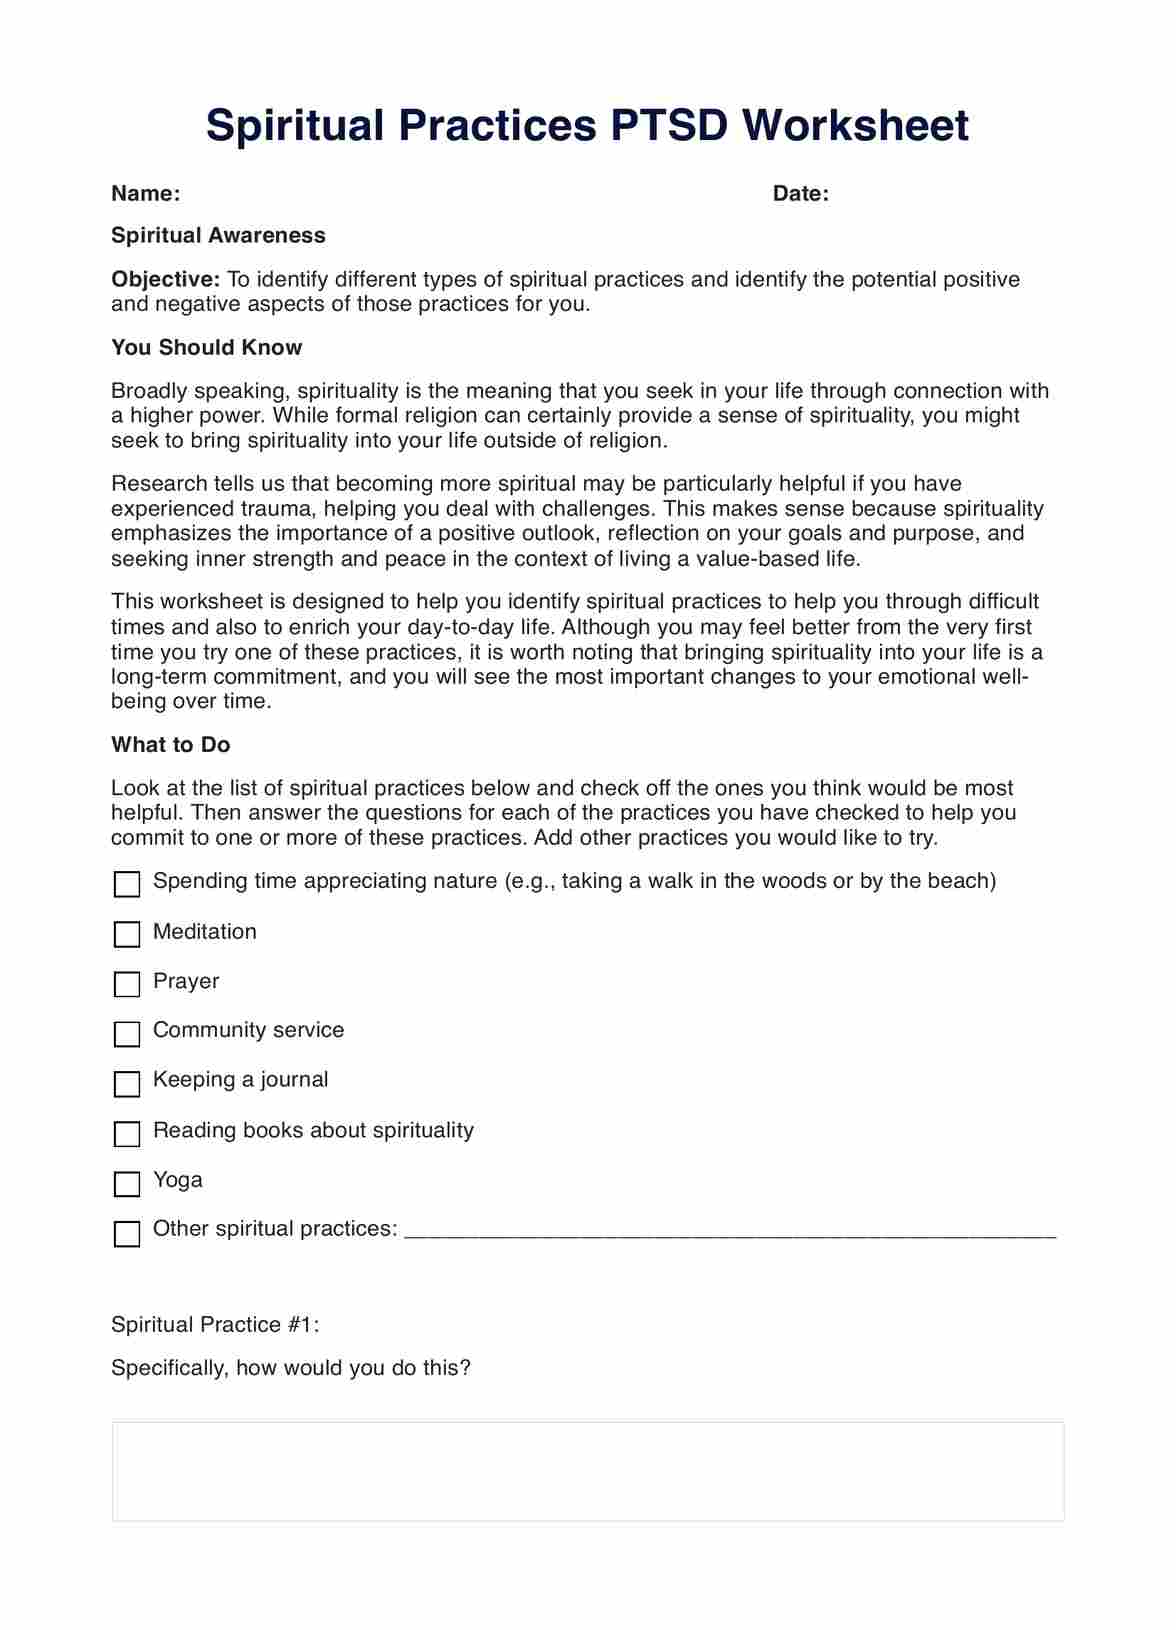 Spiritual Practices PTSD Worksheet PDF Example